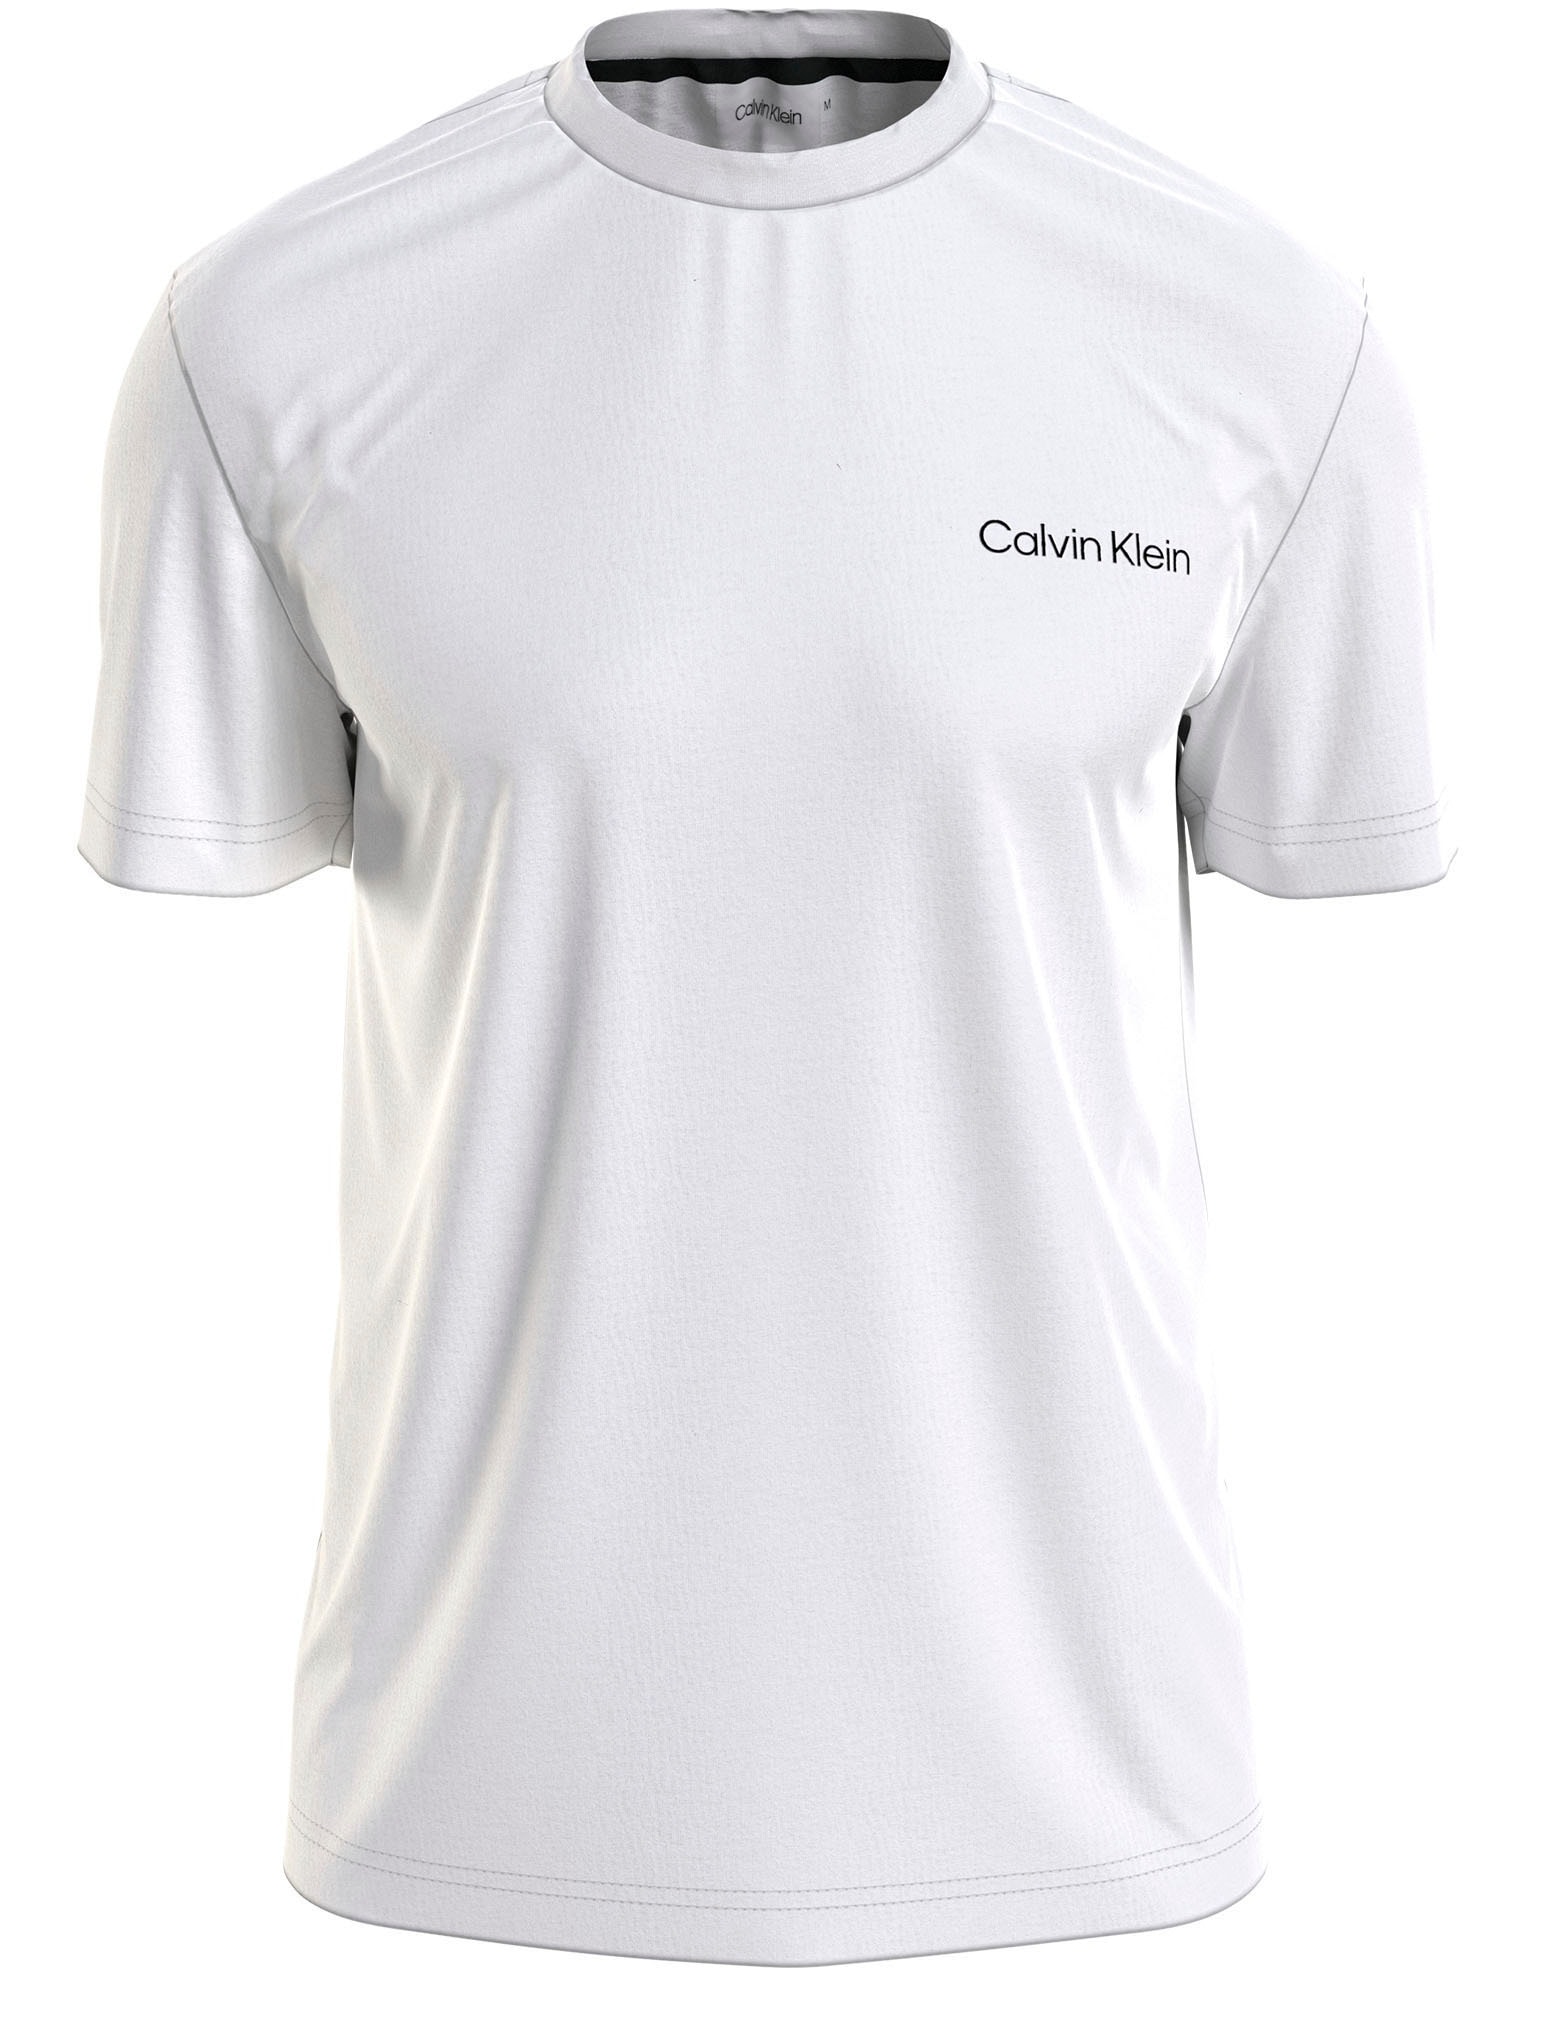 BACK versandkostenfrei ♕ »ANGLED Klein T-Shirt auf LOGO Calvin T-SHIRT«